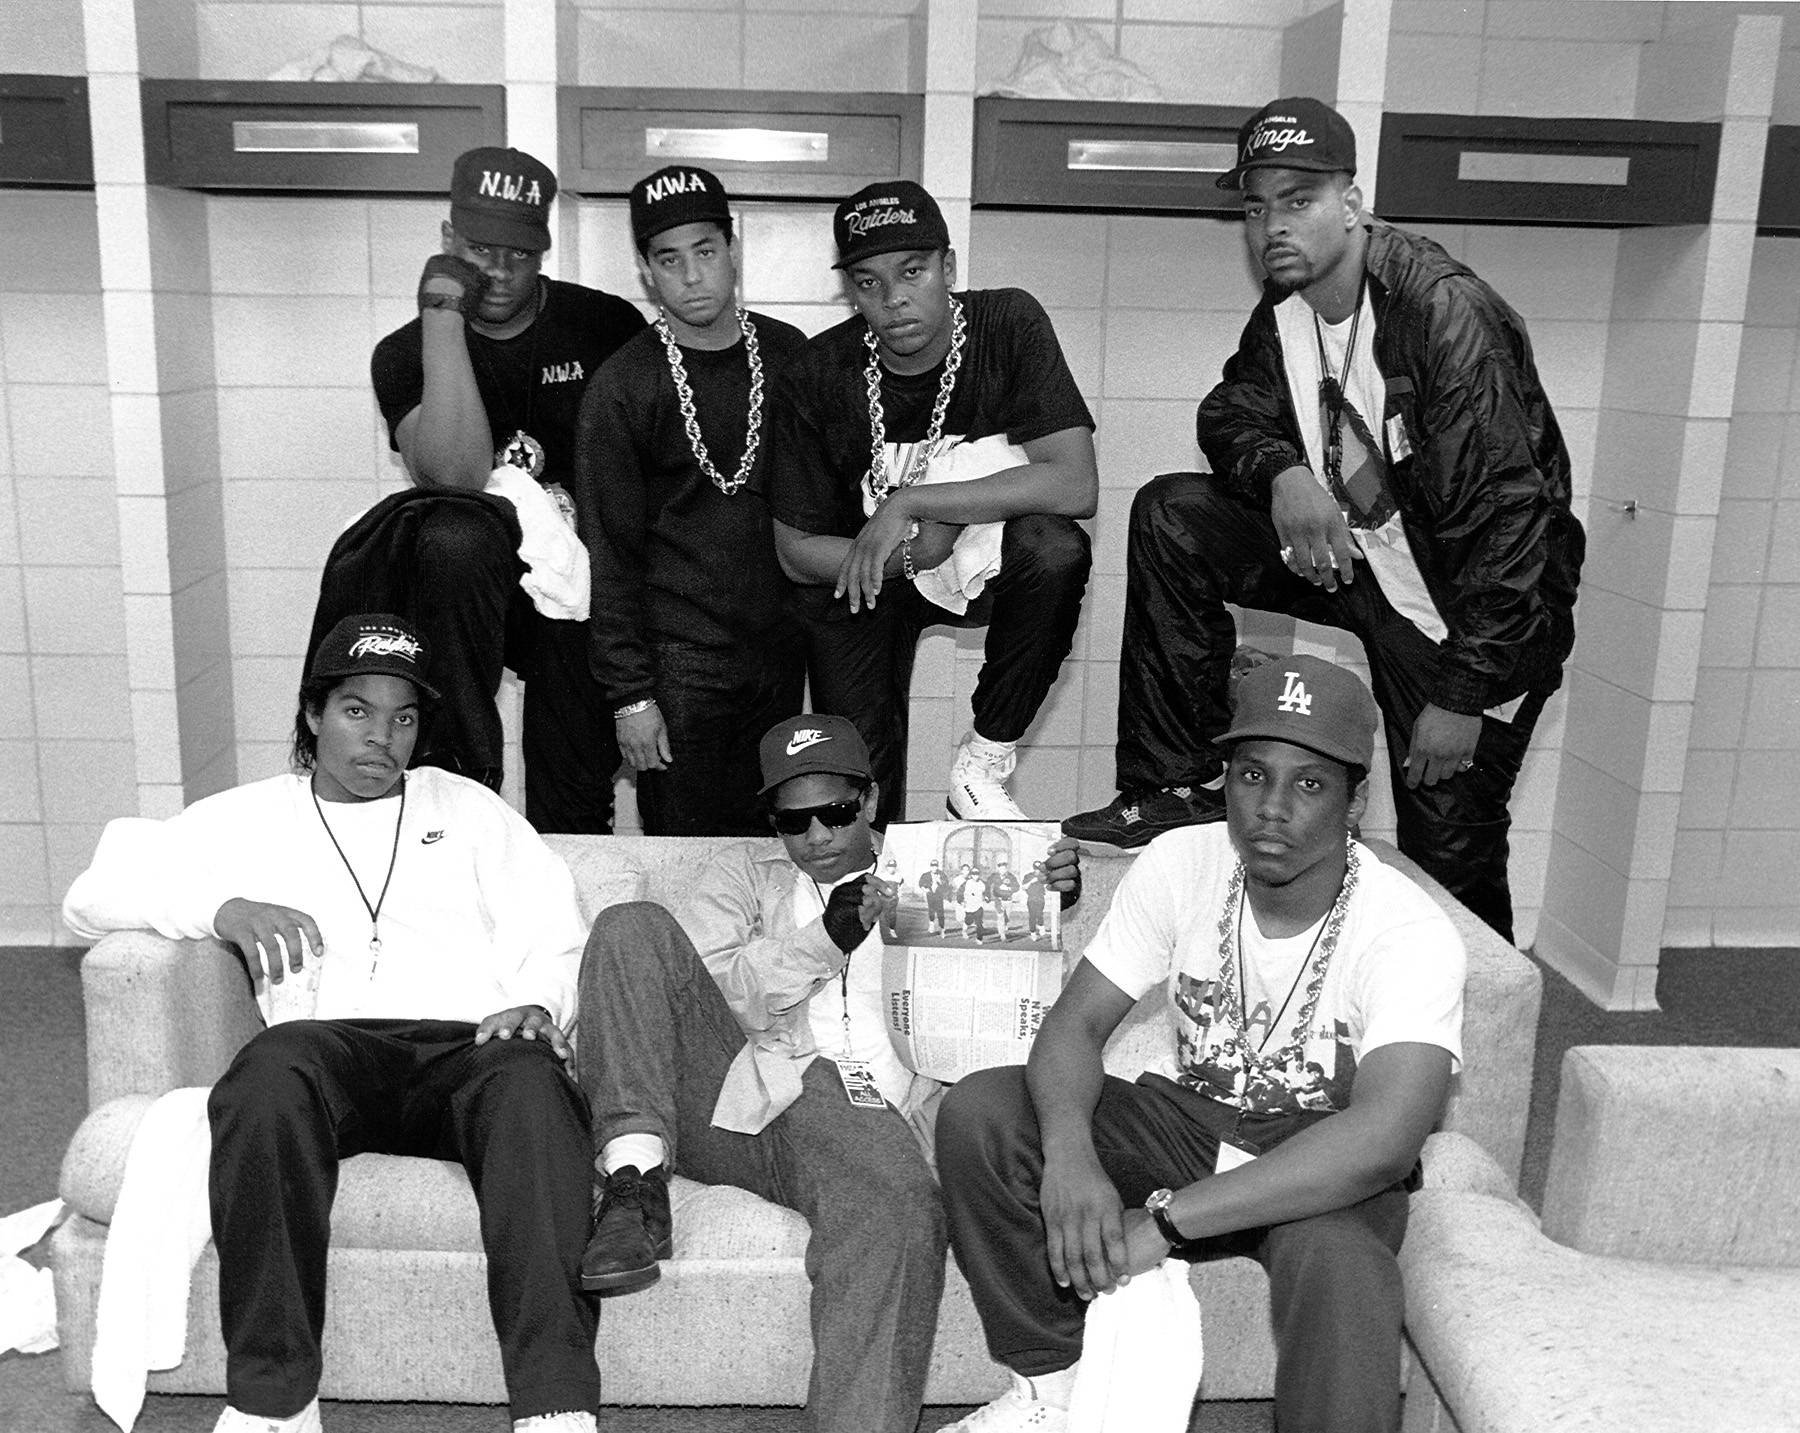 NWA, Ice Cube, Dr. Dre